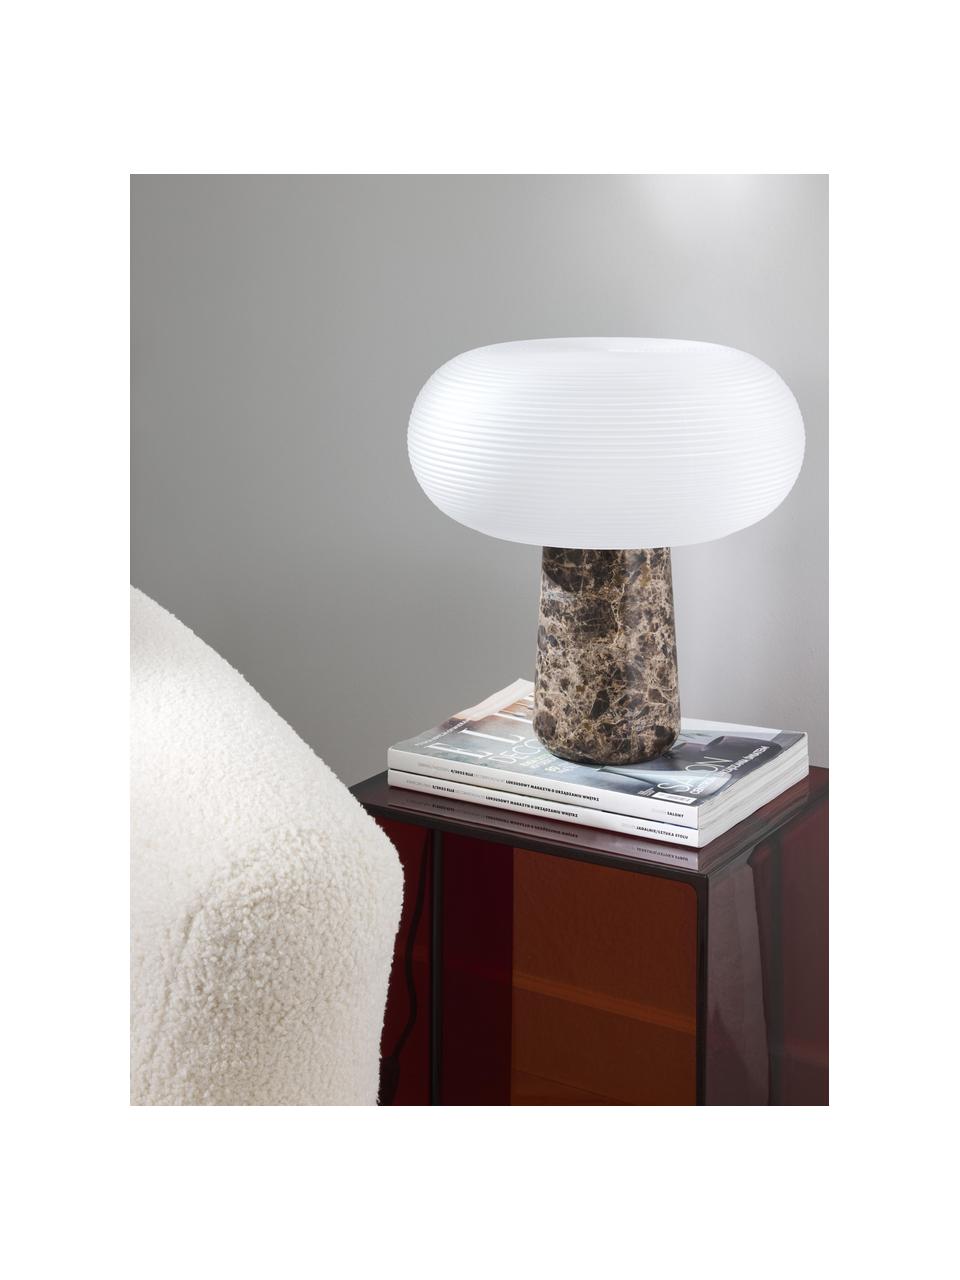 Tafellamp Mariella met marmeren voet, Lampenkap: glas, Lampvoet: marmer, metaal, Wit, donkerbruin, gemarmerd, B 32 x H 33 cm